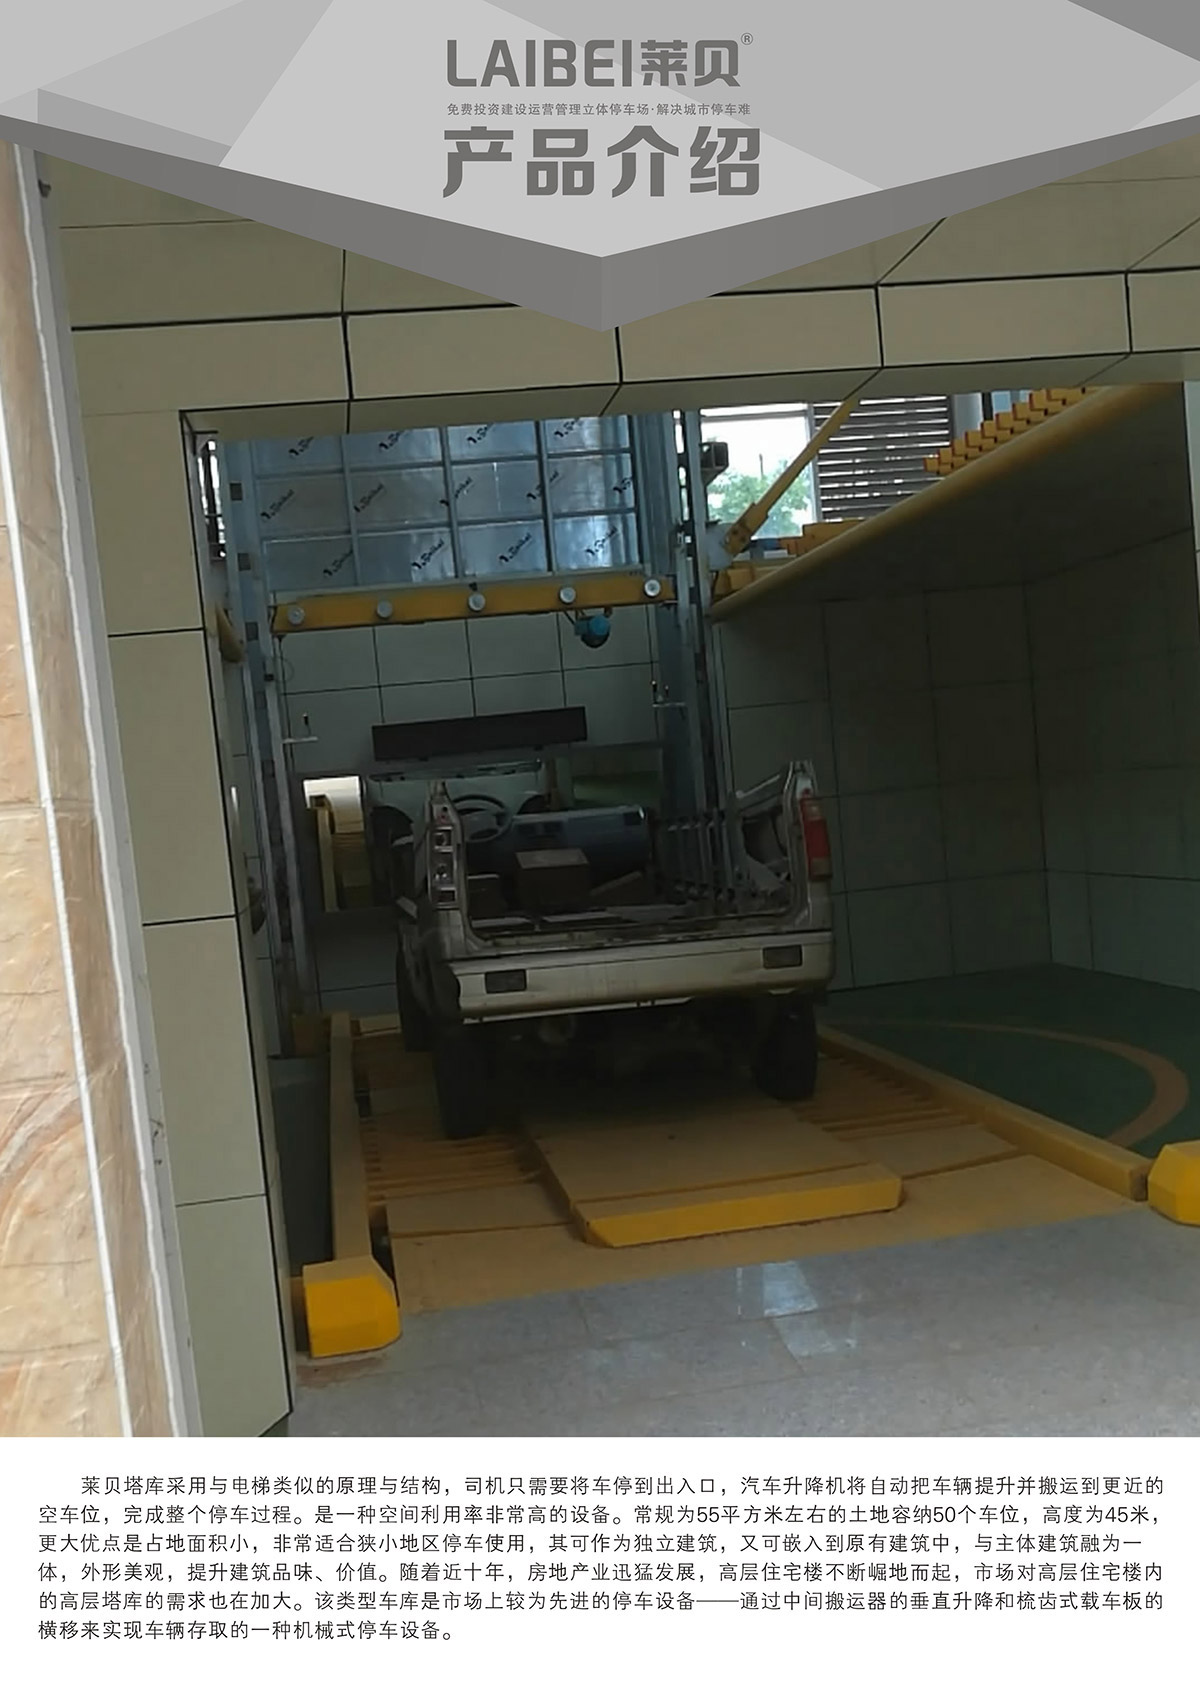 重庆PCS垂直升降立体停车设备产品介绍.jpg